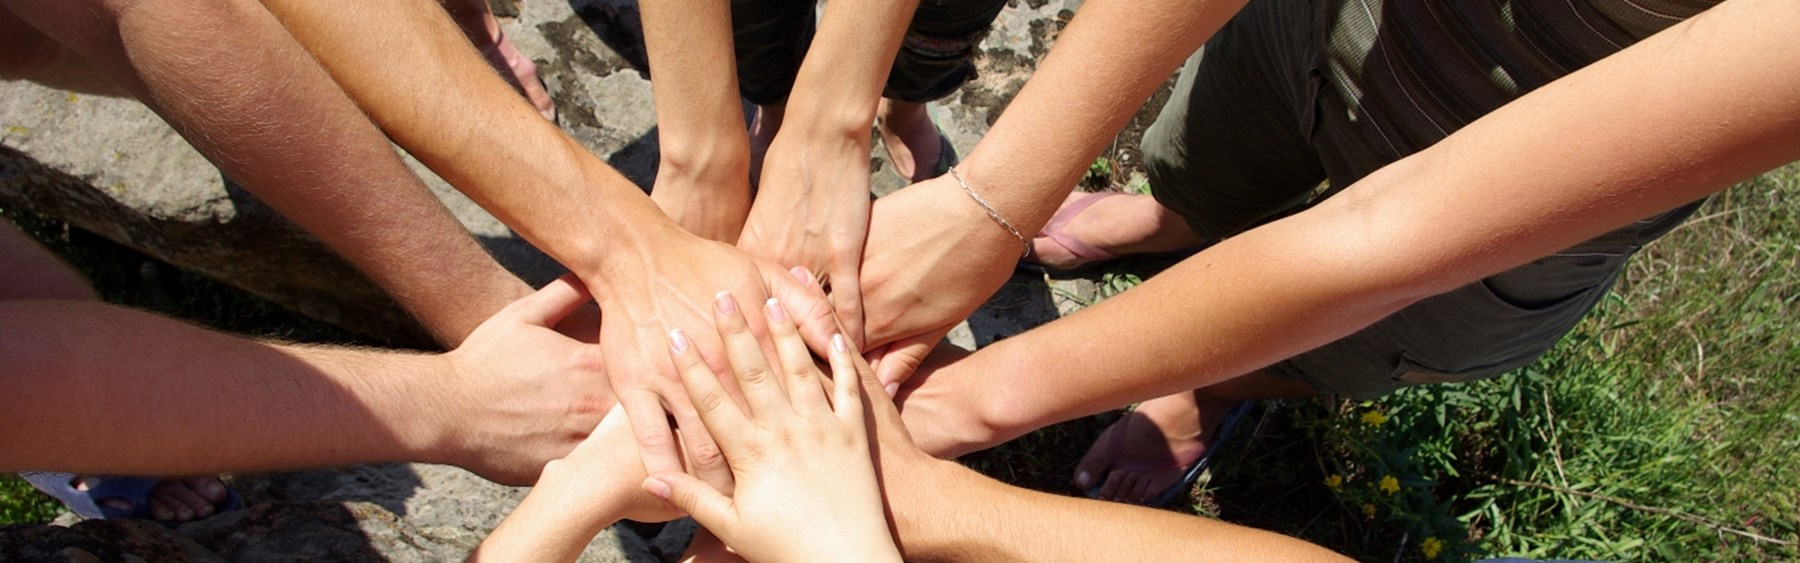 En masse personer står i en cirkel og har deres hænder samlet på midten. Det symboliserer, at de samarbejder og hjælper hinanden.